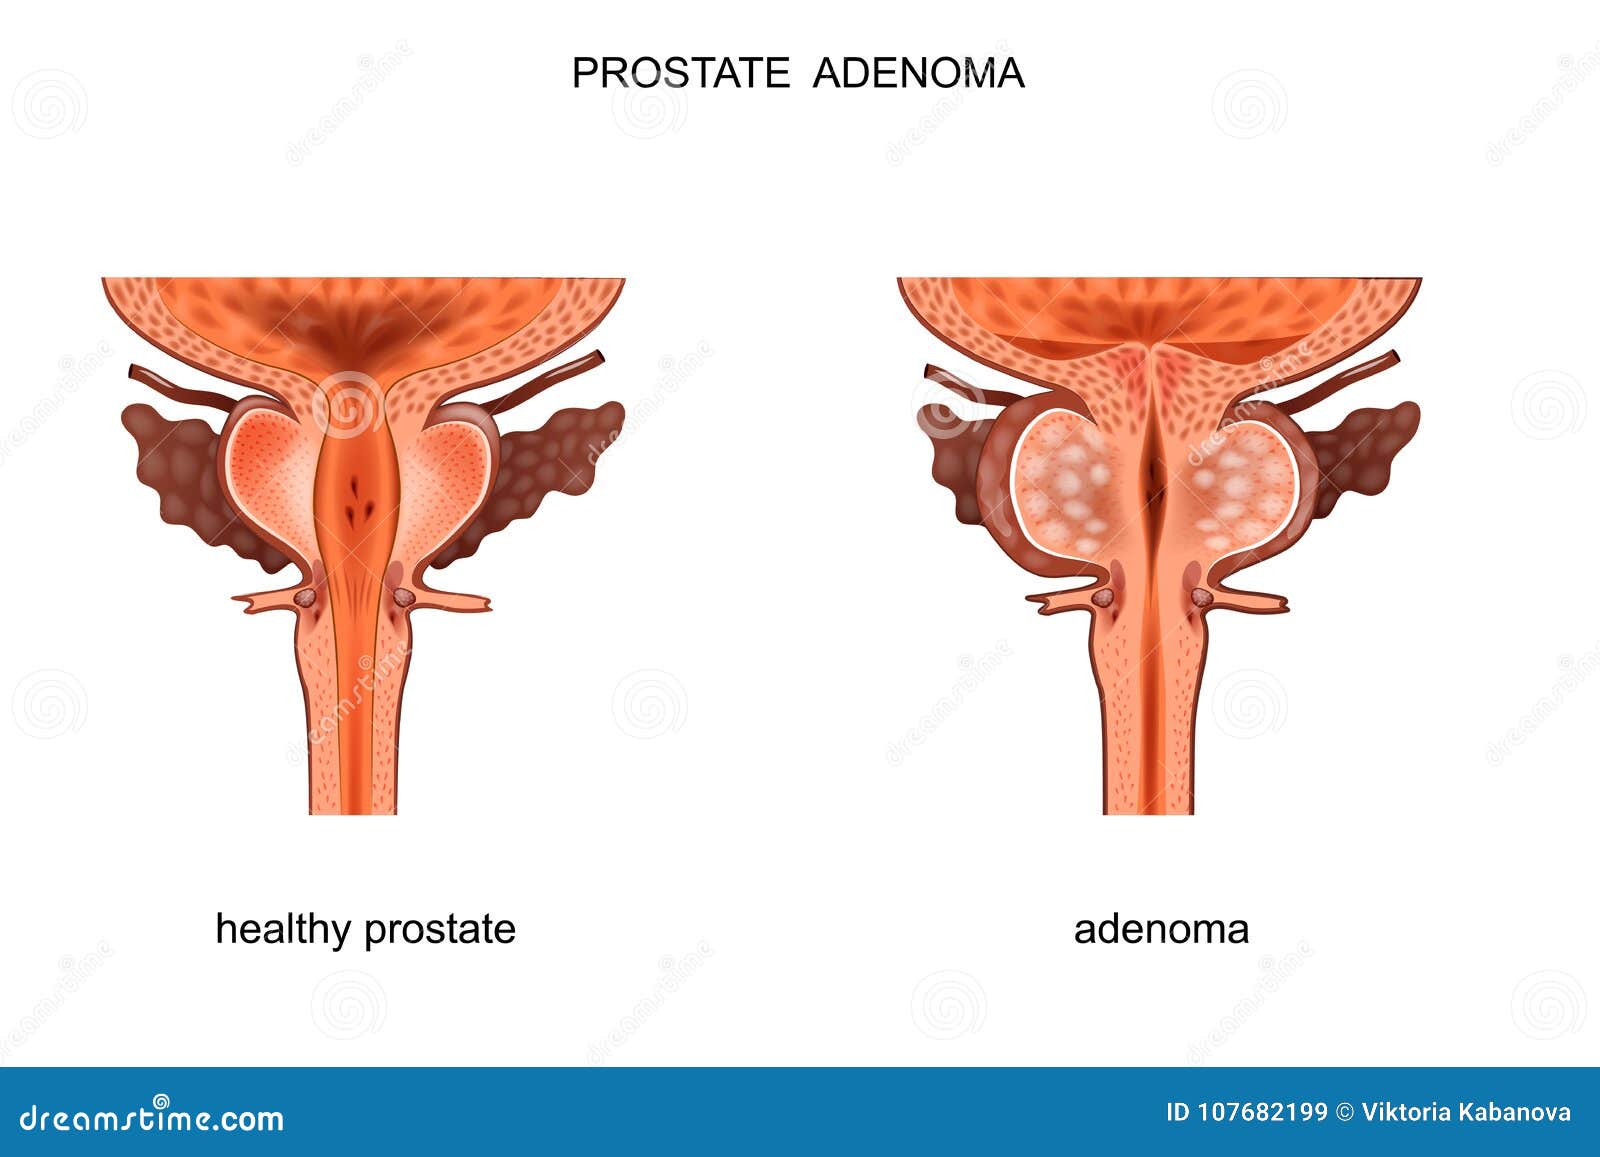 Oferte la Stimulatoare prostata ✅ Reduceri de pret pentru Stimulatoare prostata la promotie